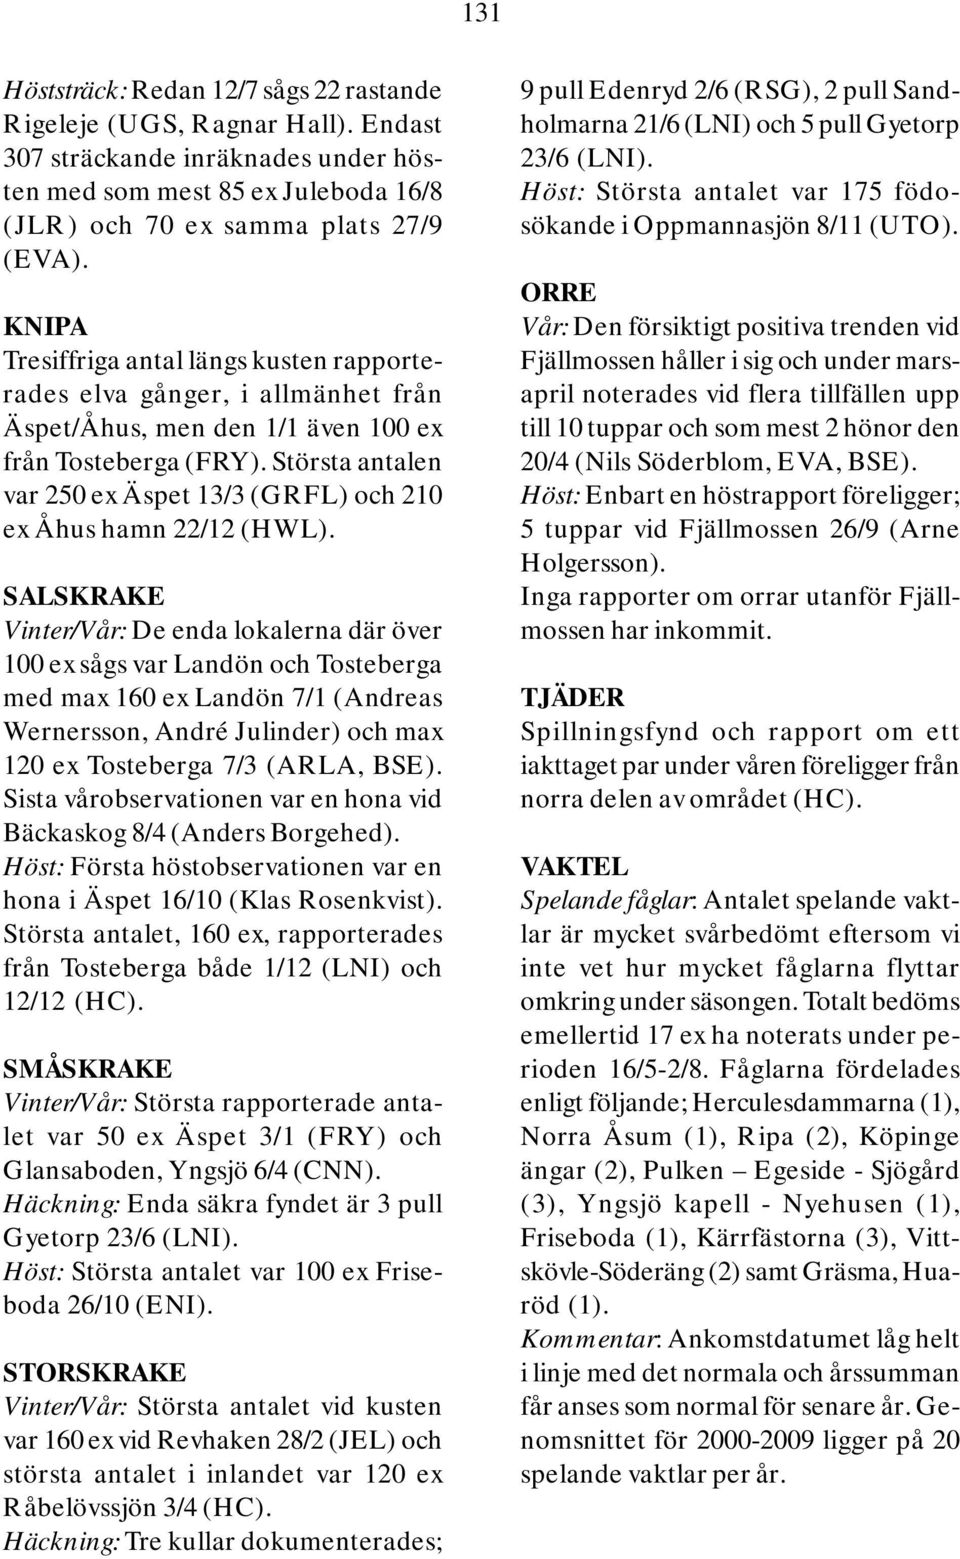 Största antalen var 250 ex Äspet 13/3 (GRFL) och 210 ex Åhus hamn 22/12 (HWL).